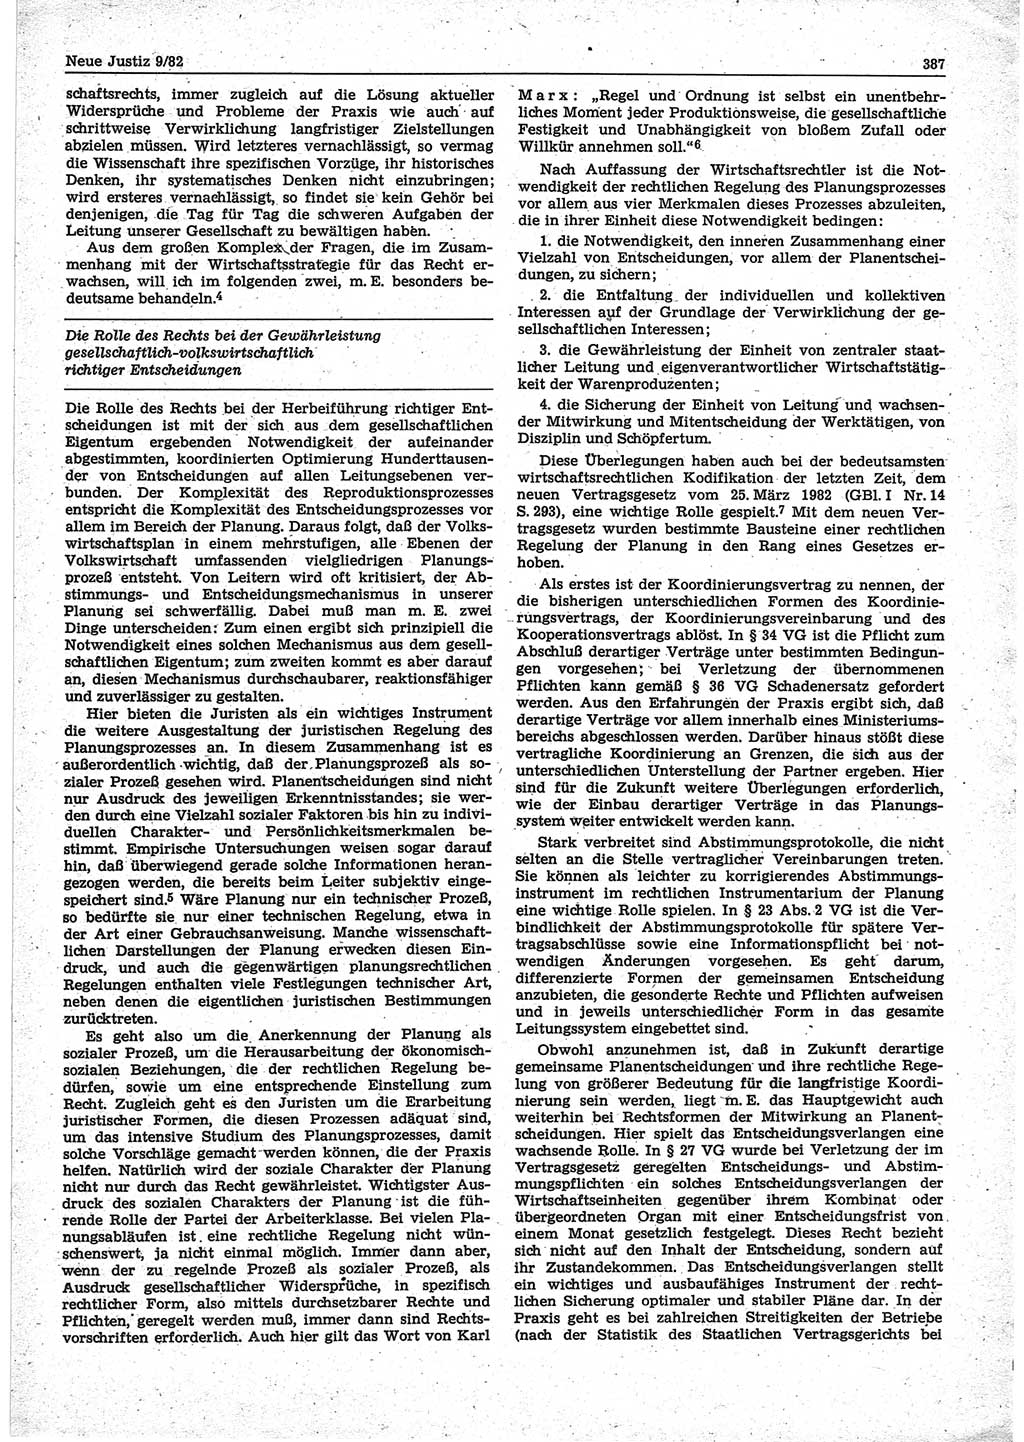 Neue Justiz (NJ), Zeitschrift für sozialistisches Recht und Gesetzlichkeit [Deutsche Demokratische Republik (DDR)], 36. Jahrgang 1982, Seite 387 (NJ DDR 1982, S. 387)